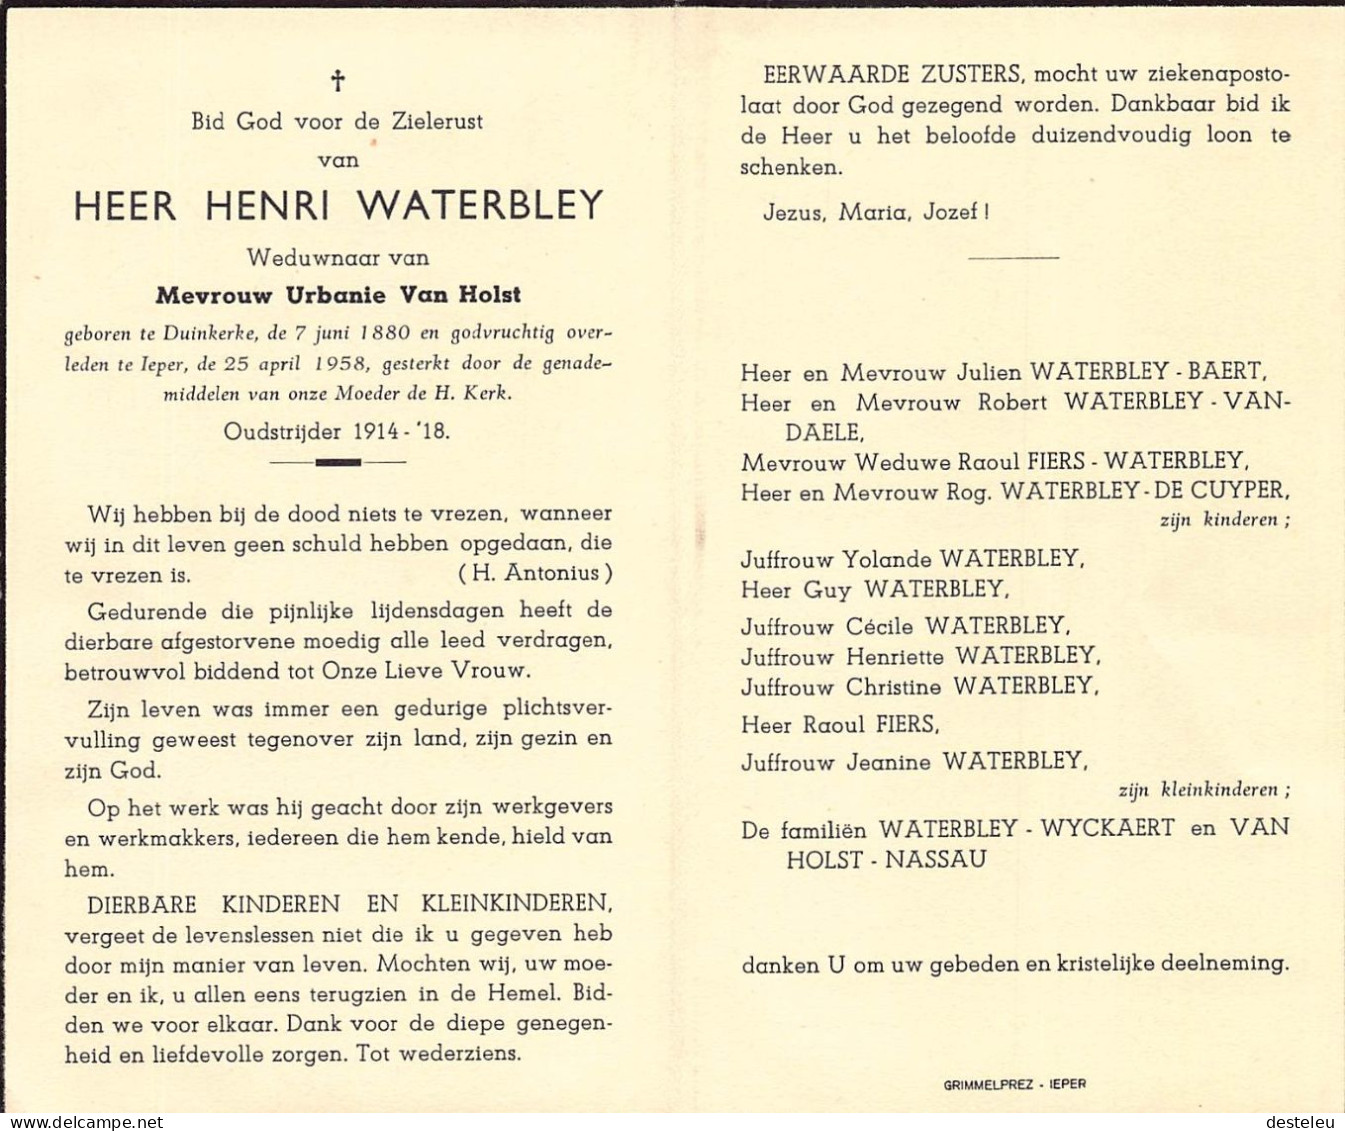 Doodsprentje / Image Mortuaire Henri Waterbley - Van Holst - Duinkerke Dunkerque Ieper 1880-1958 - Todesanzeige